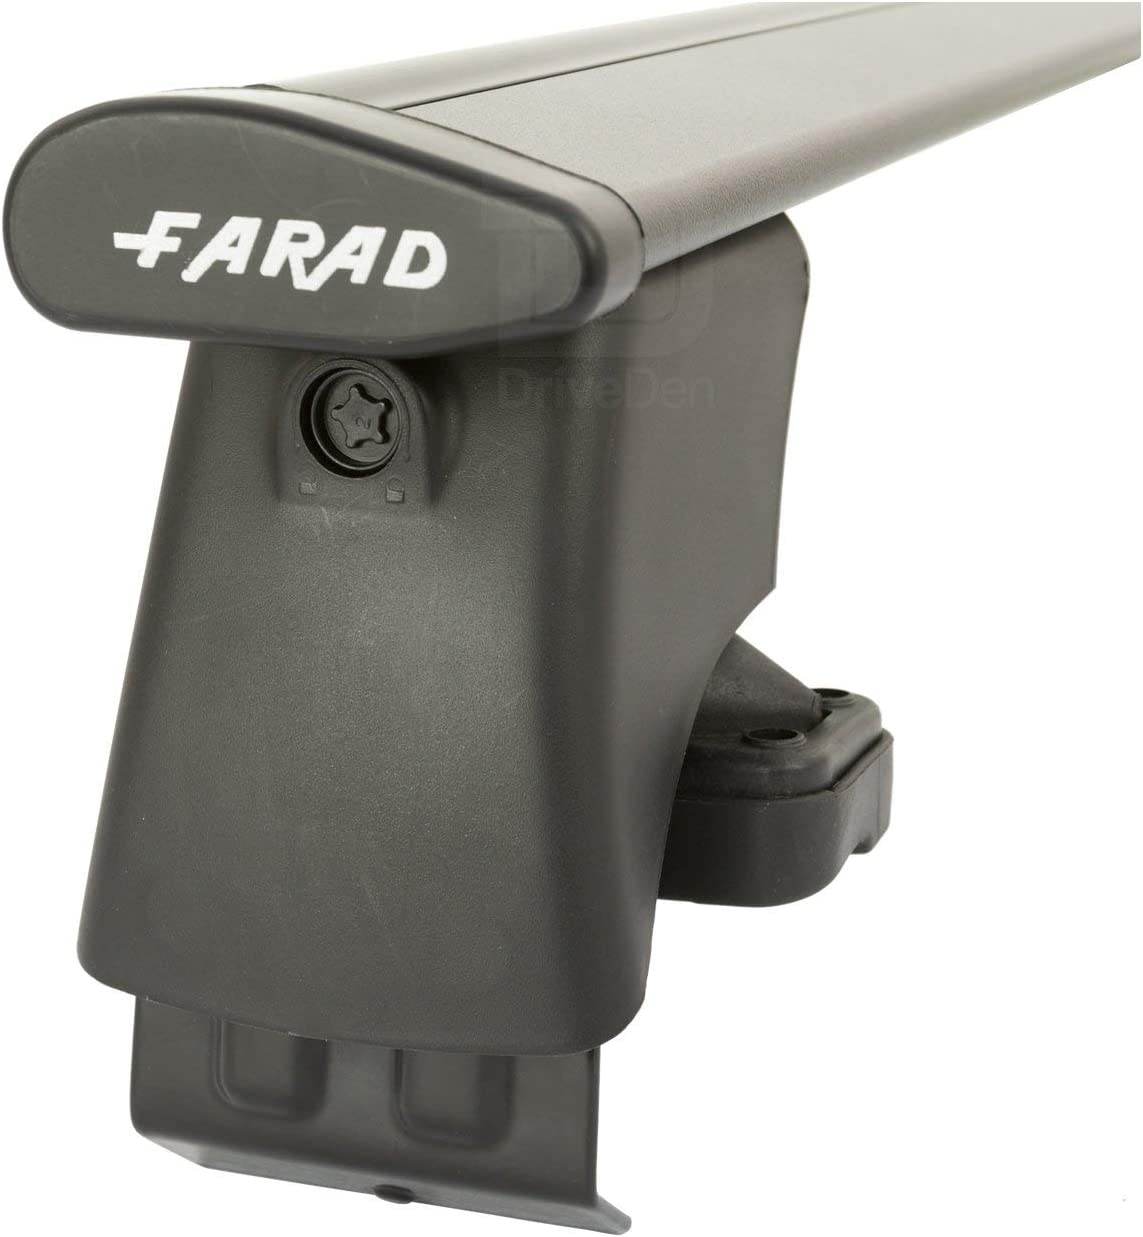 FARAD-Kit H2 per barre portatutto - Volkswagen Polo 2009-2017 (senza corrimano)